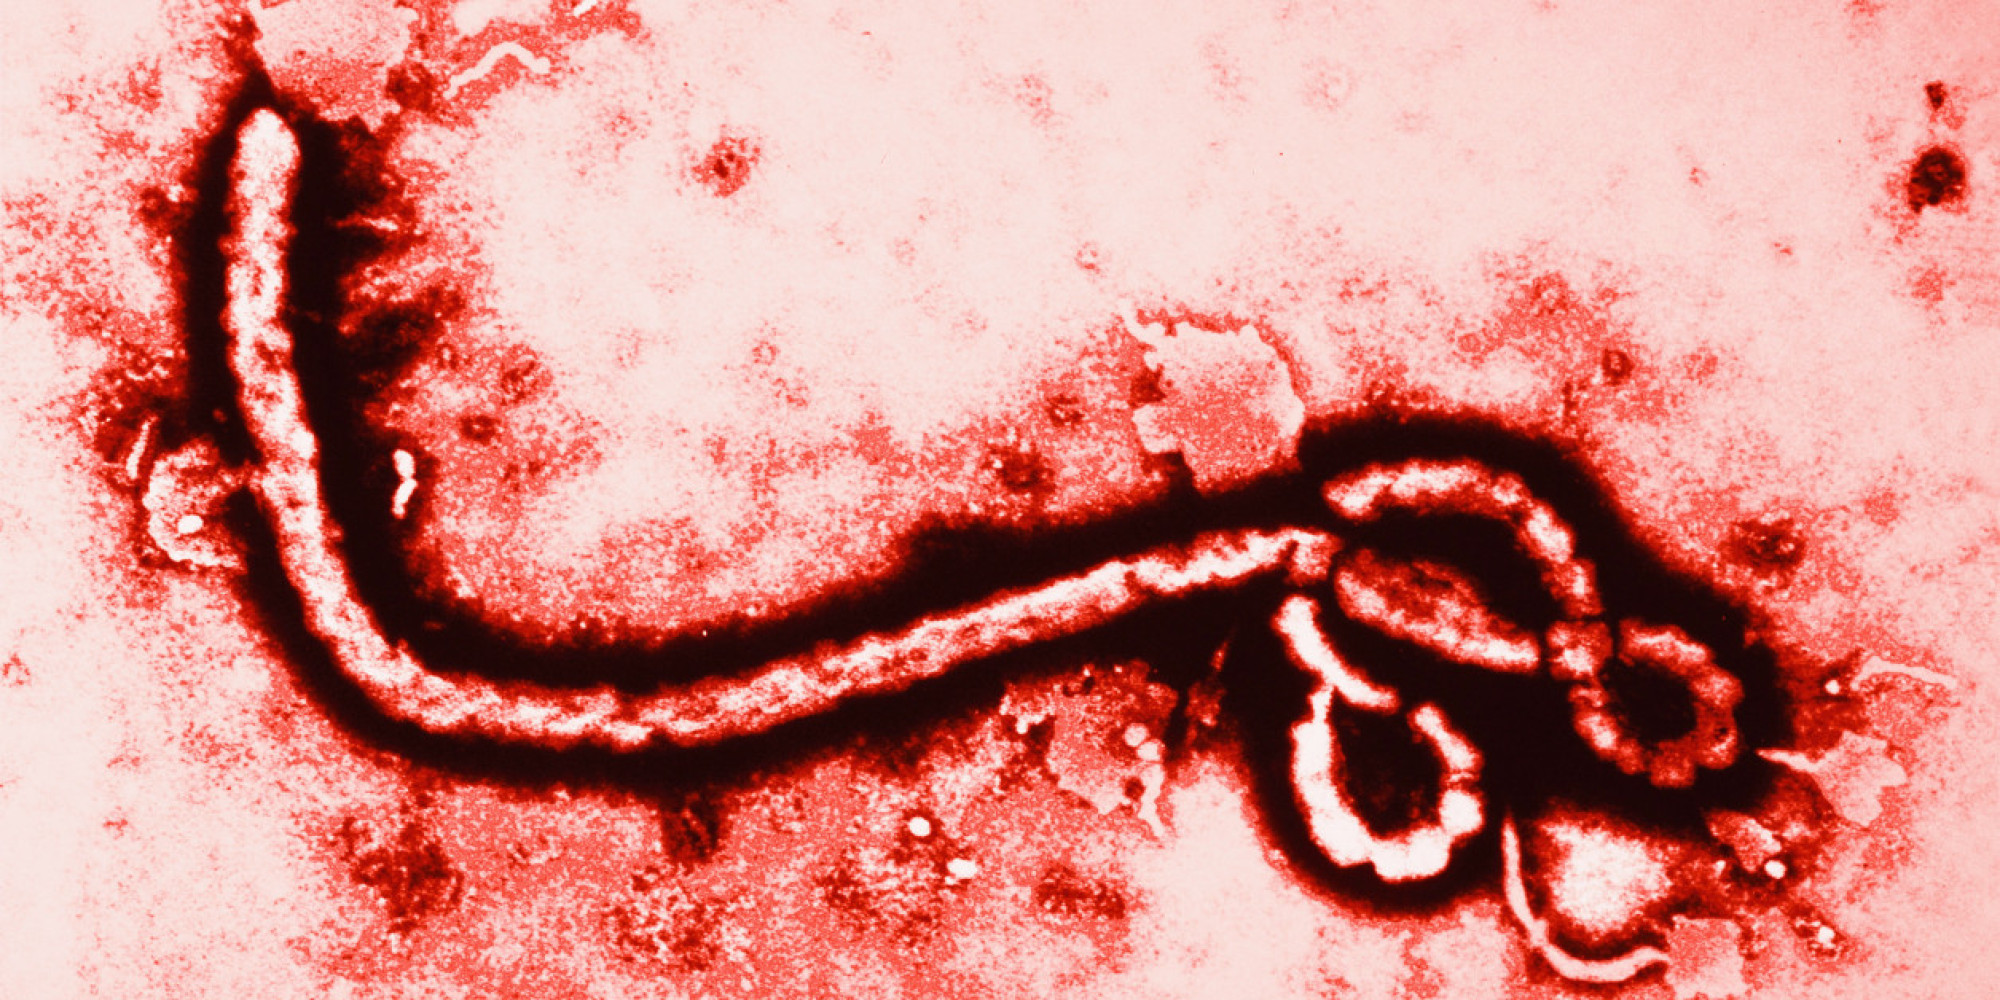 Kanak-kanak Warga Malaysia Dijangkiti Virus Ebola?